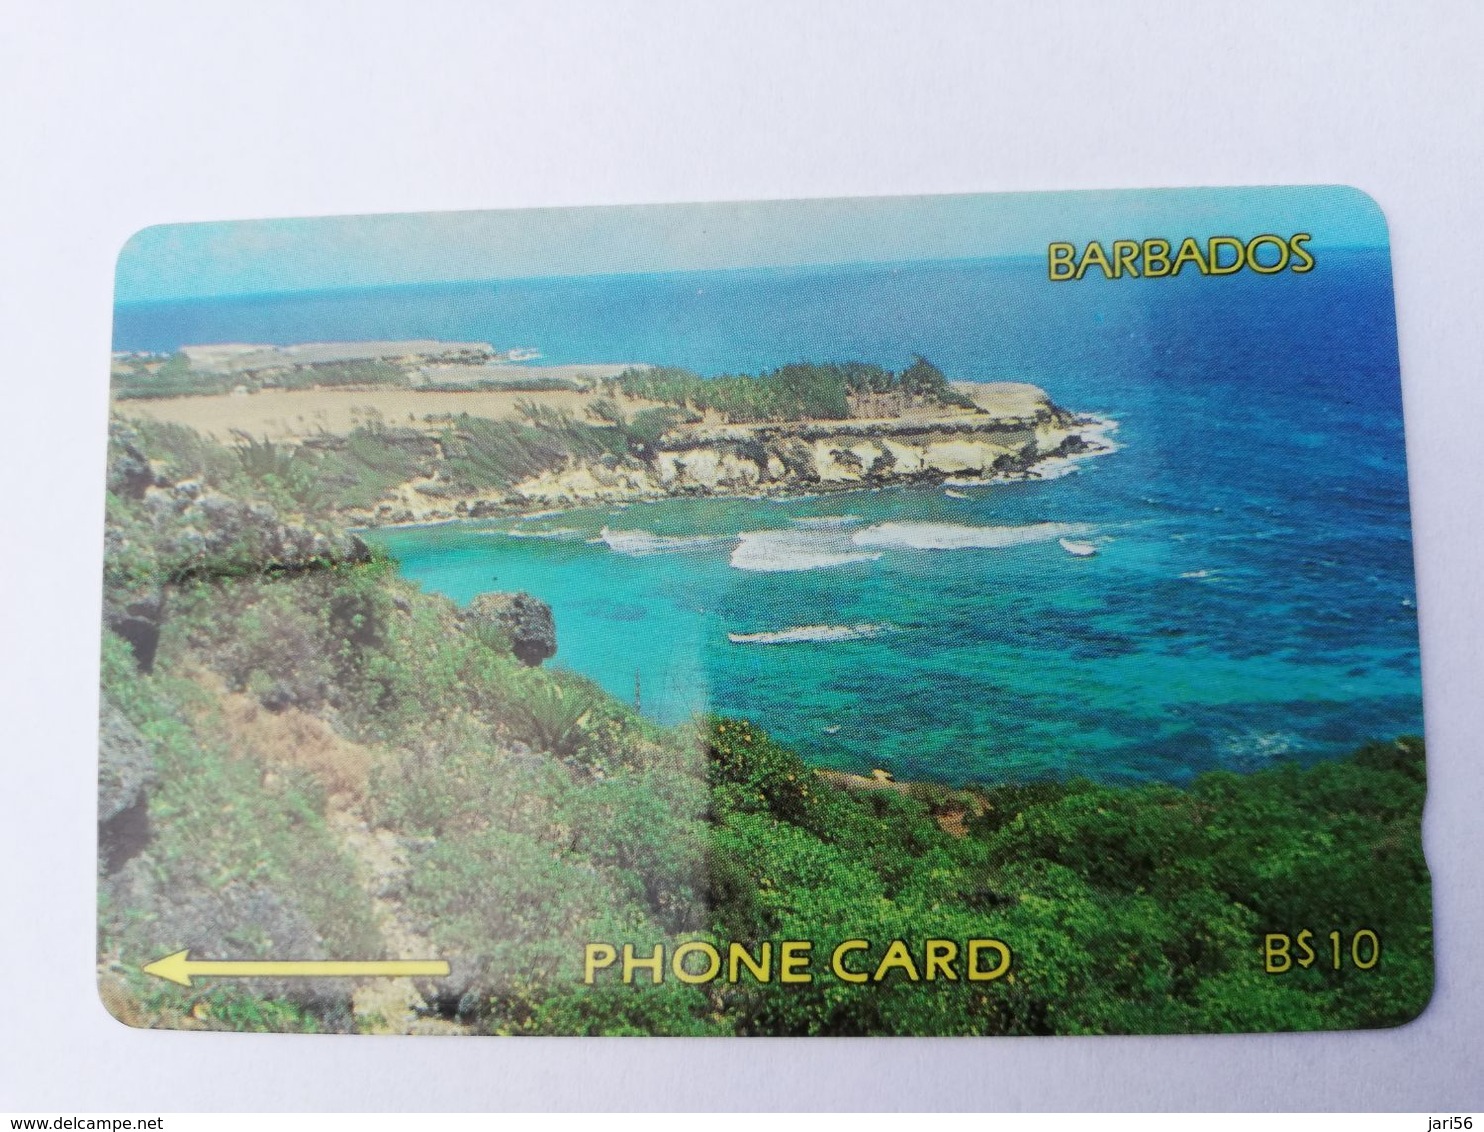 BARBADOS   $10-  Gpt Magnetic     BAR-9A  9CBDA     COASTLINE NO LOGO         Very Fine Used  Card  ** 2875** - Barbades